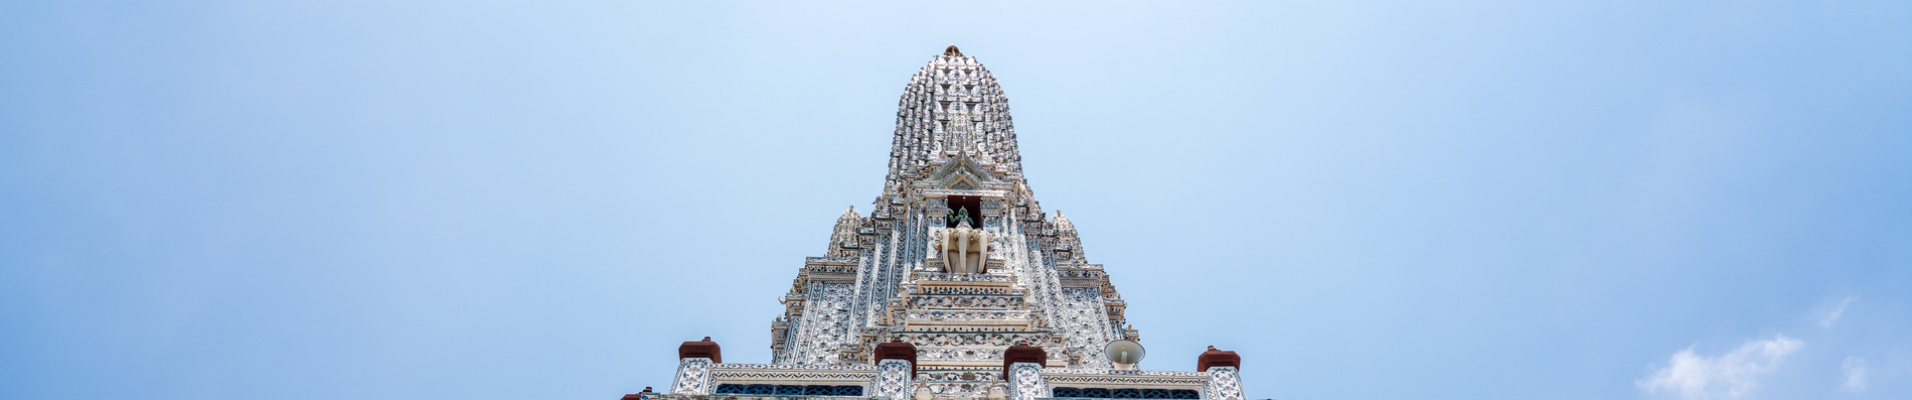 temple Wat Arun, Bangkok